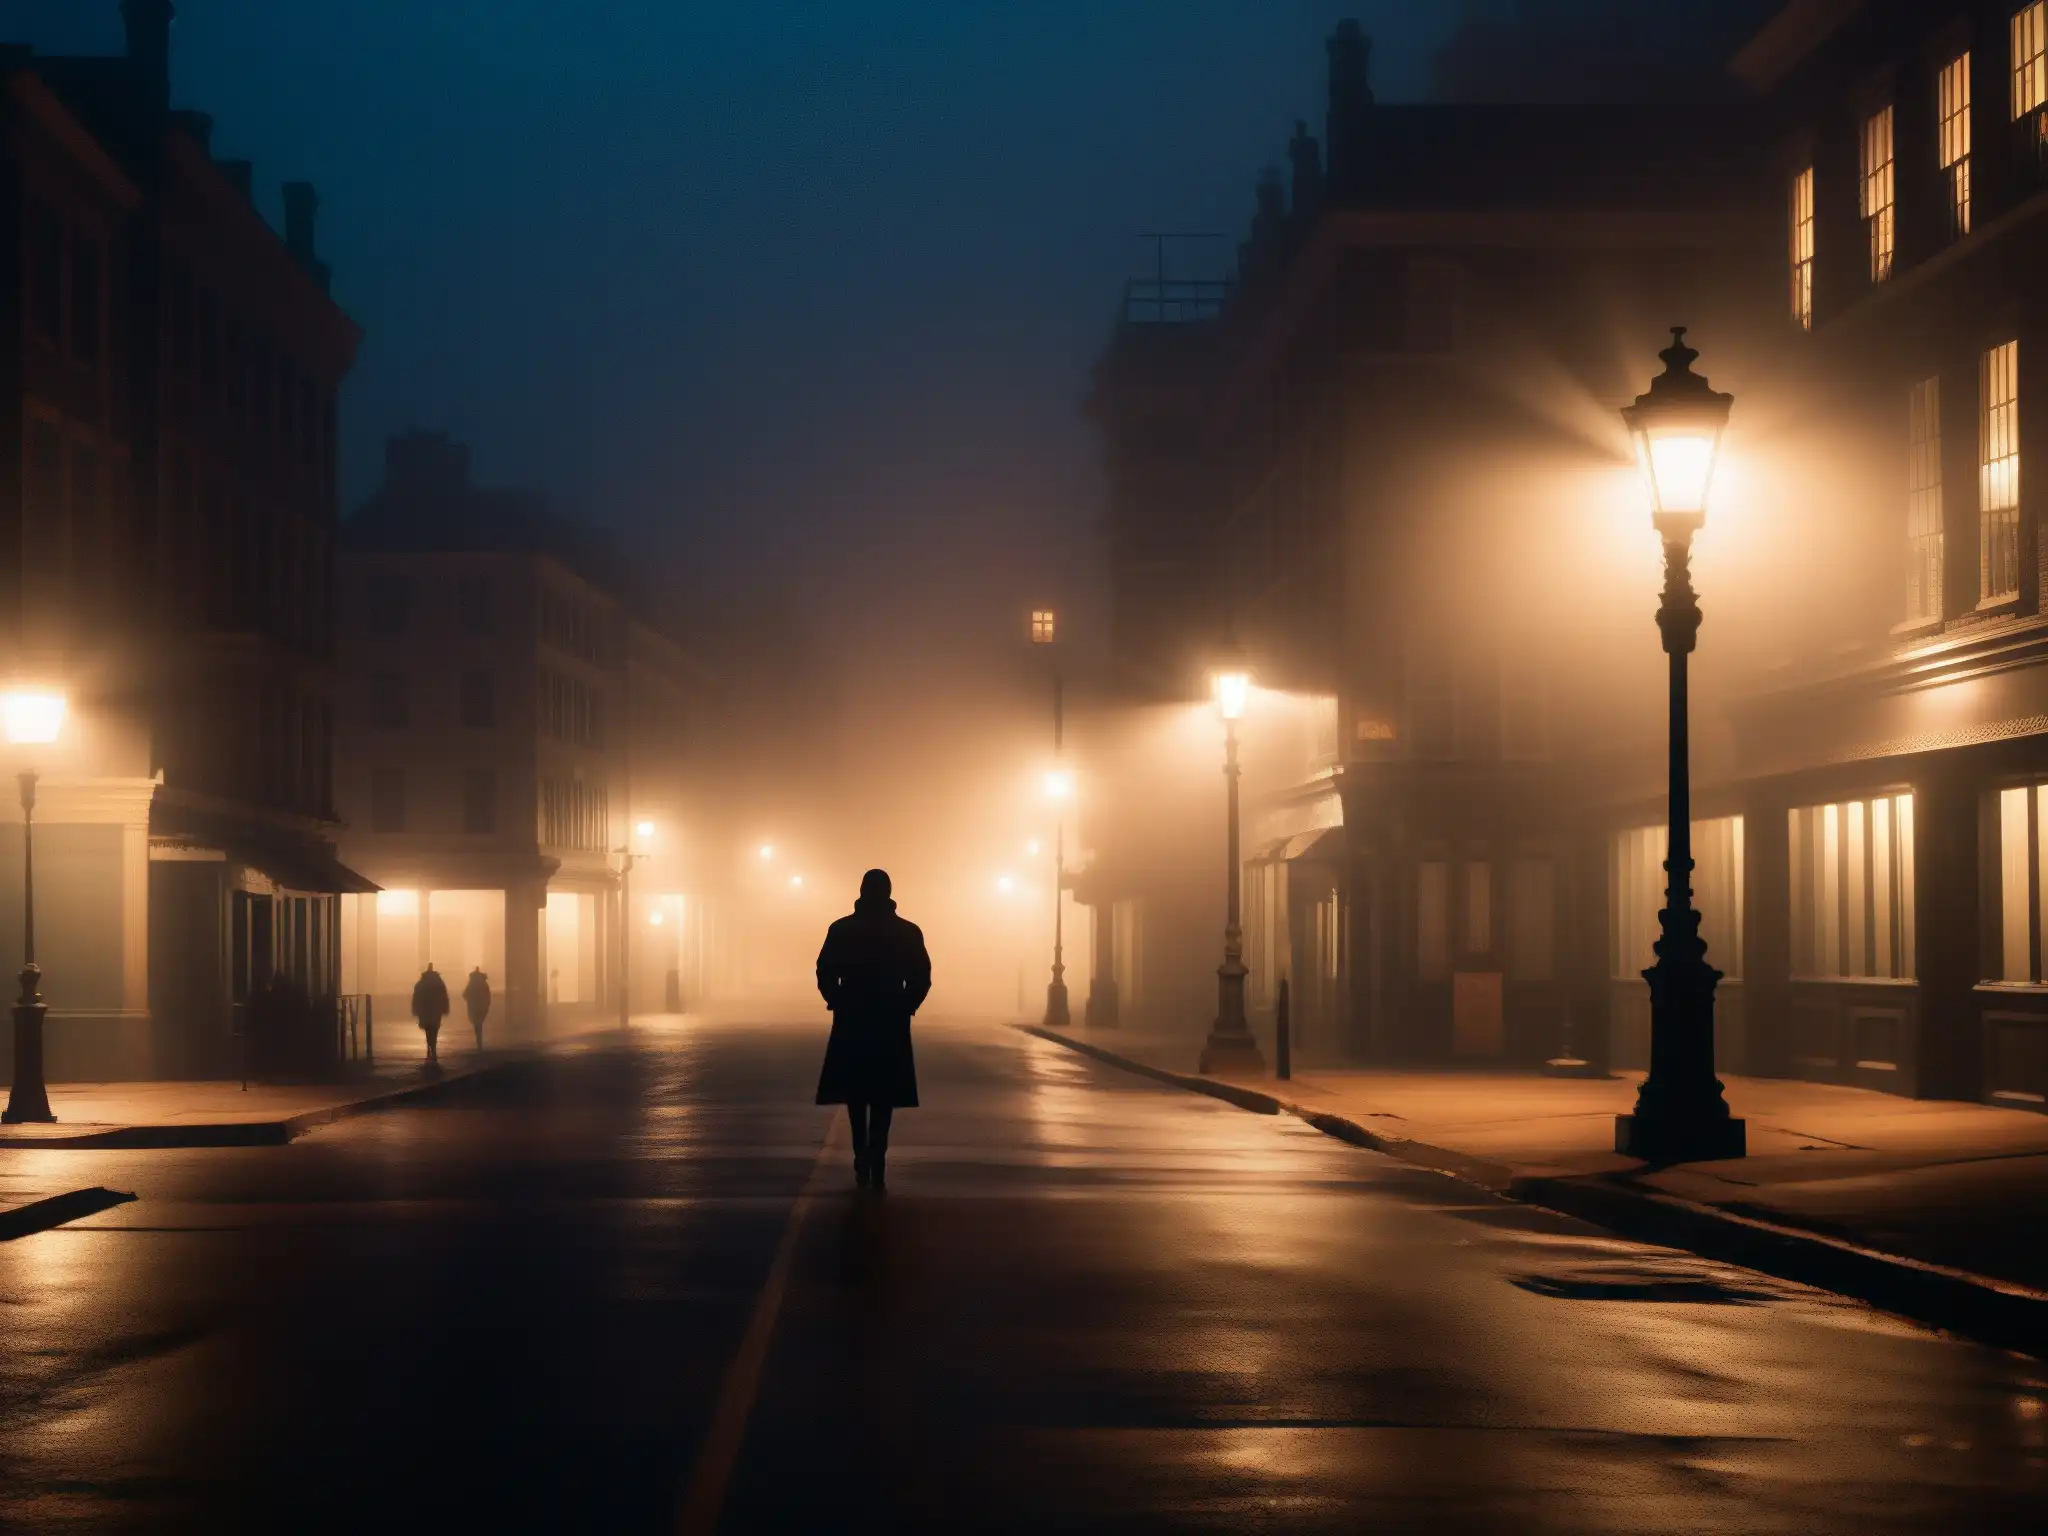 Una calle de la ciudad iluminada tenue, con densa niebla creando una atmósfera inquietante